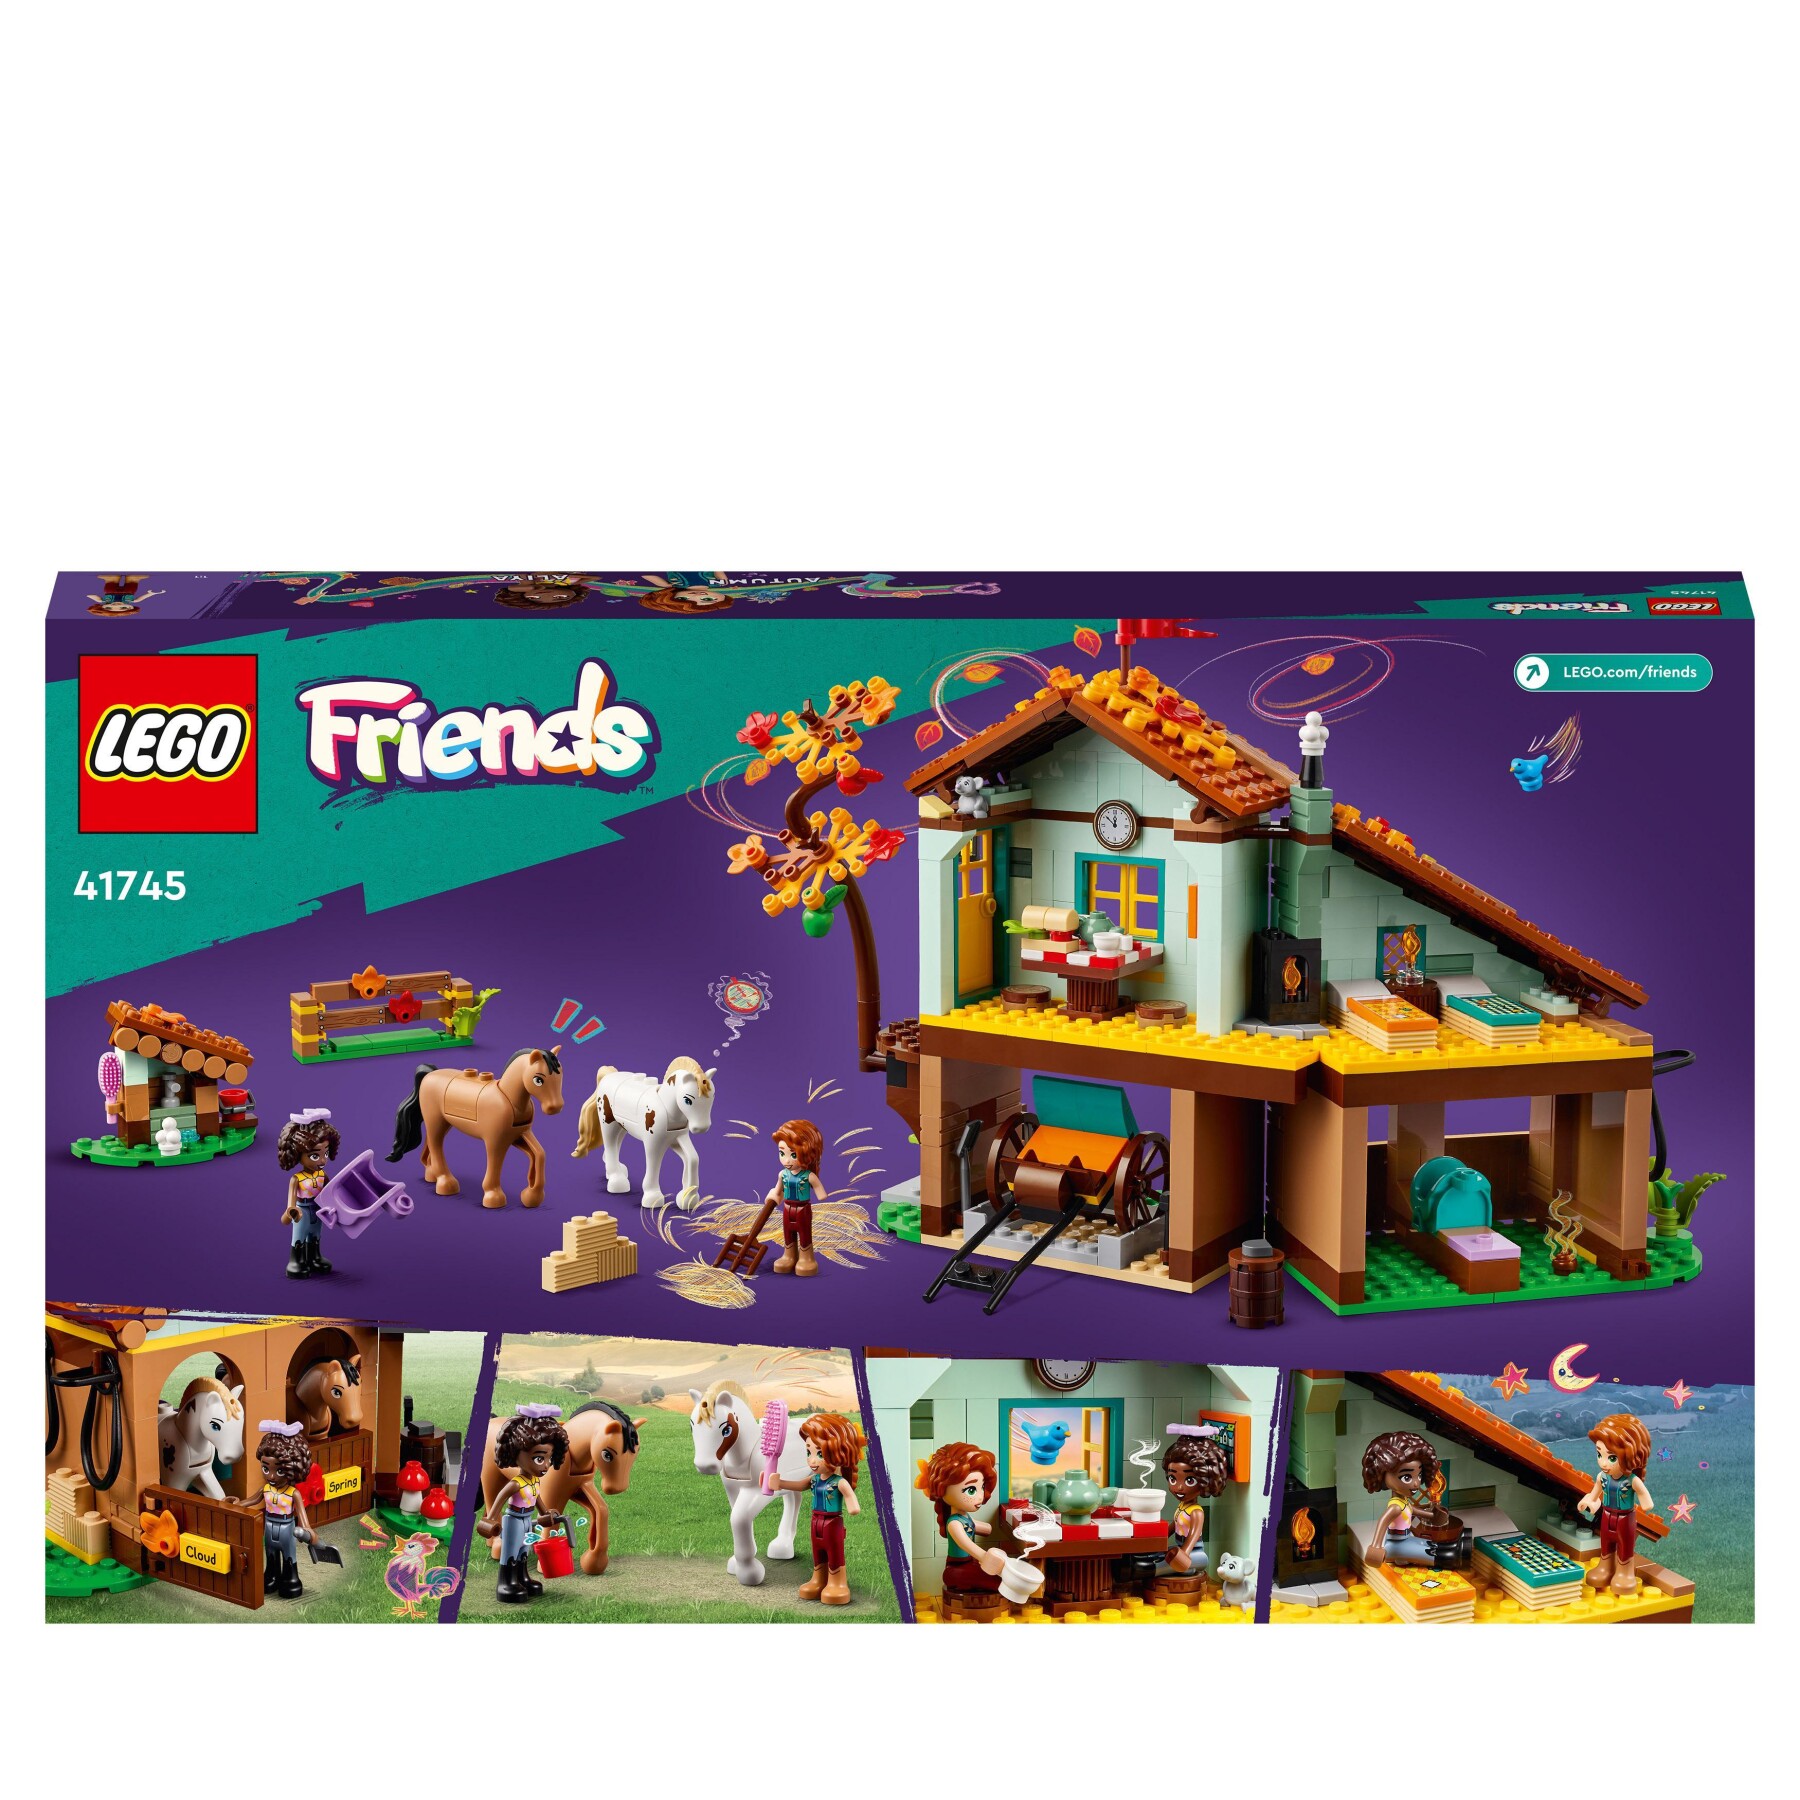 Lego friends 41745 la scuderia di autumn, 2 cavalli giocattolo, carrozza e accessori, fattoria con animali, regalo per bambini - LEGO FRIENDS